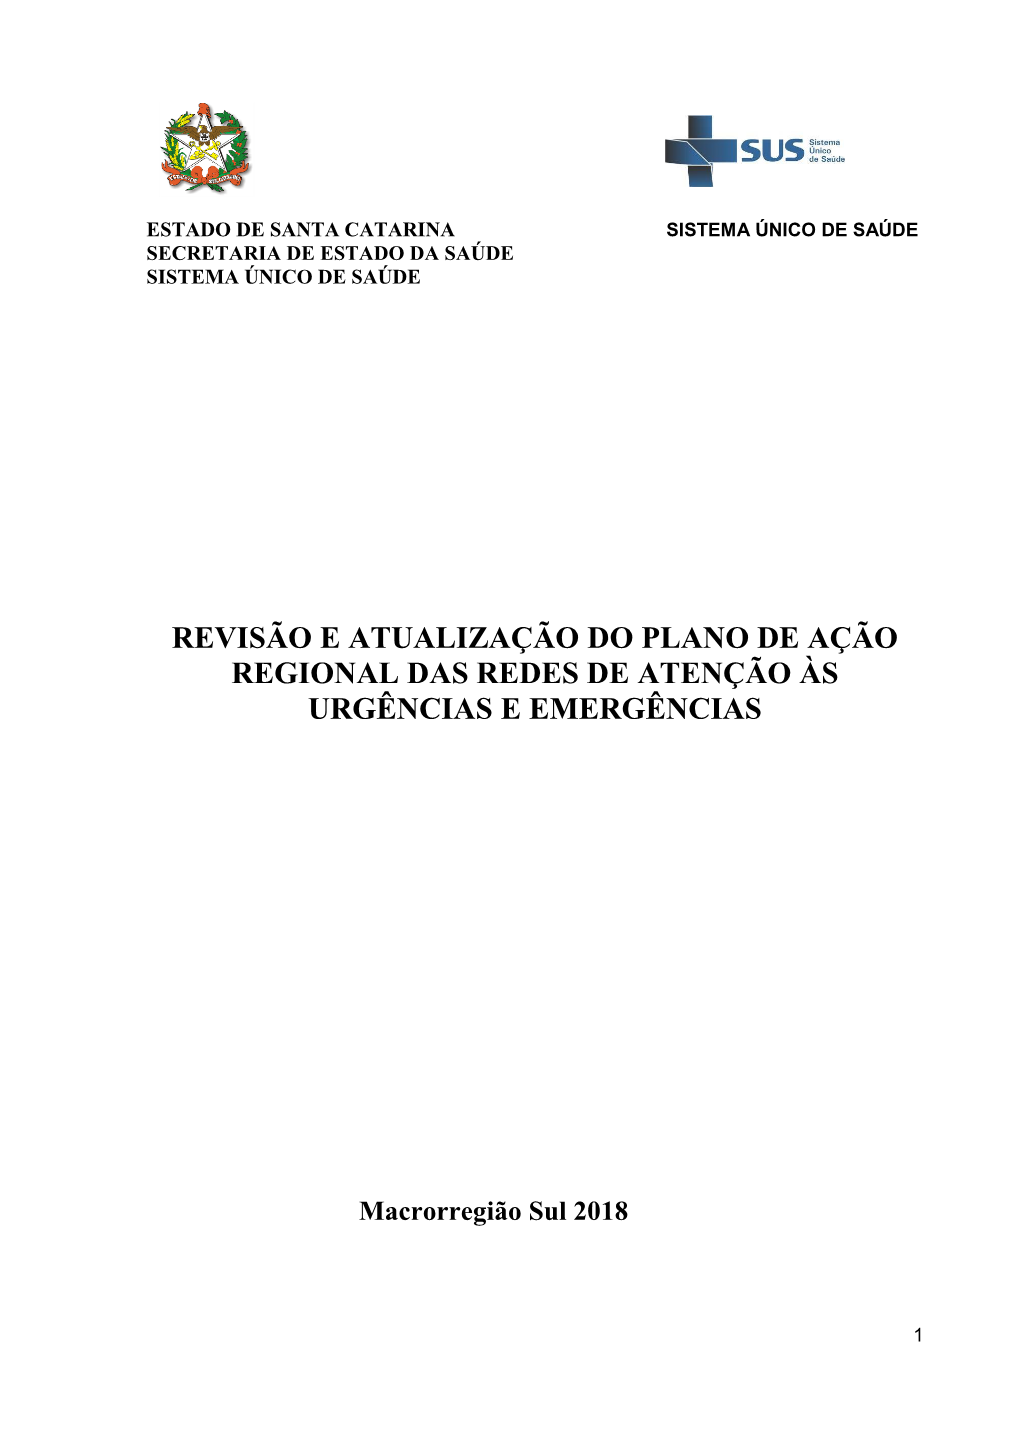 Revisão E Atualização Do Plano De Ação Regional Das Redes De Atenção Às Urgências E Emergências